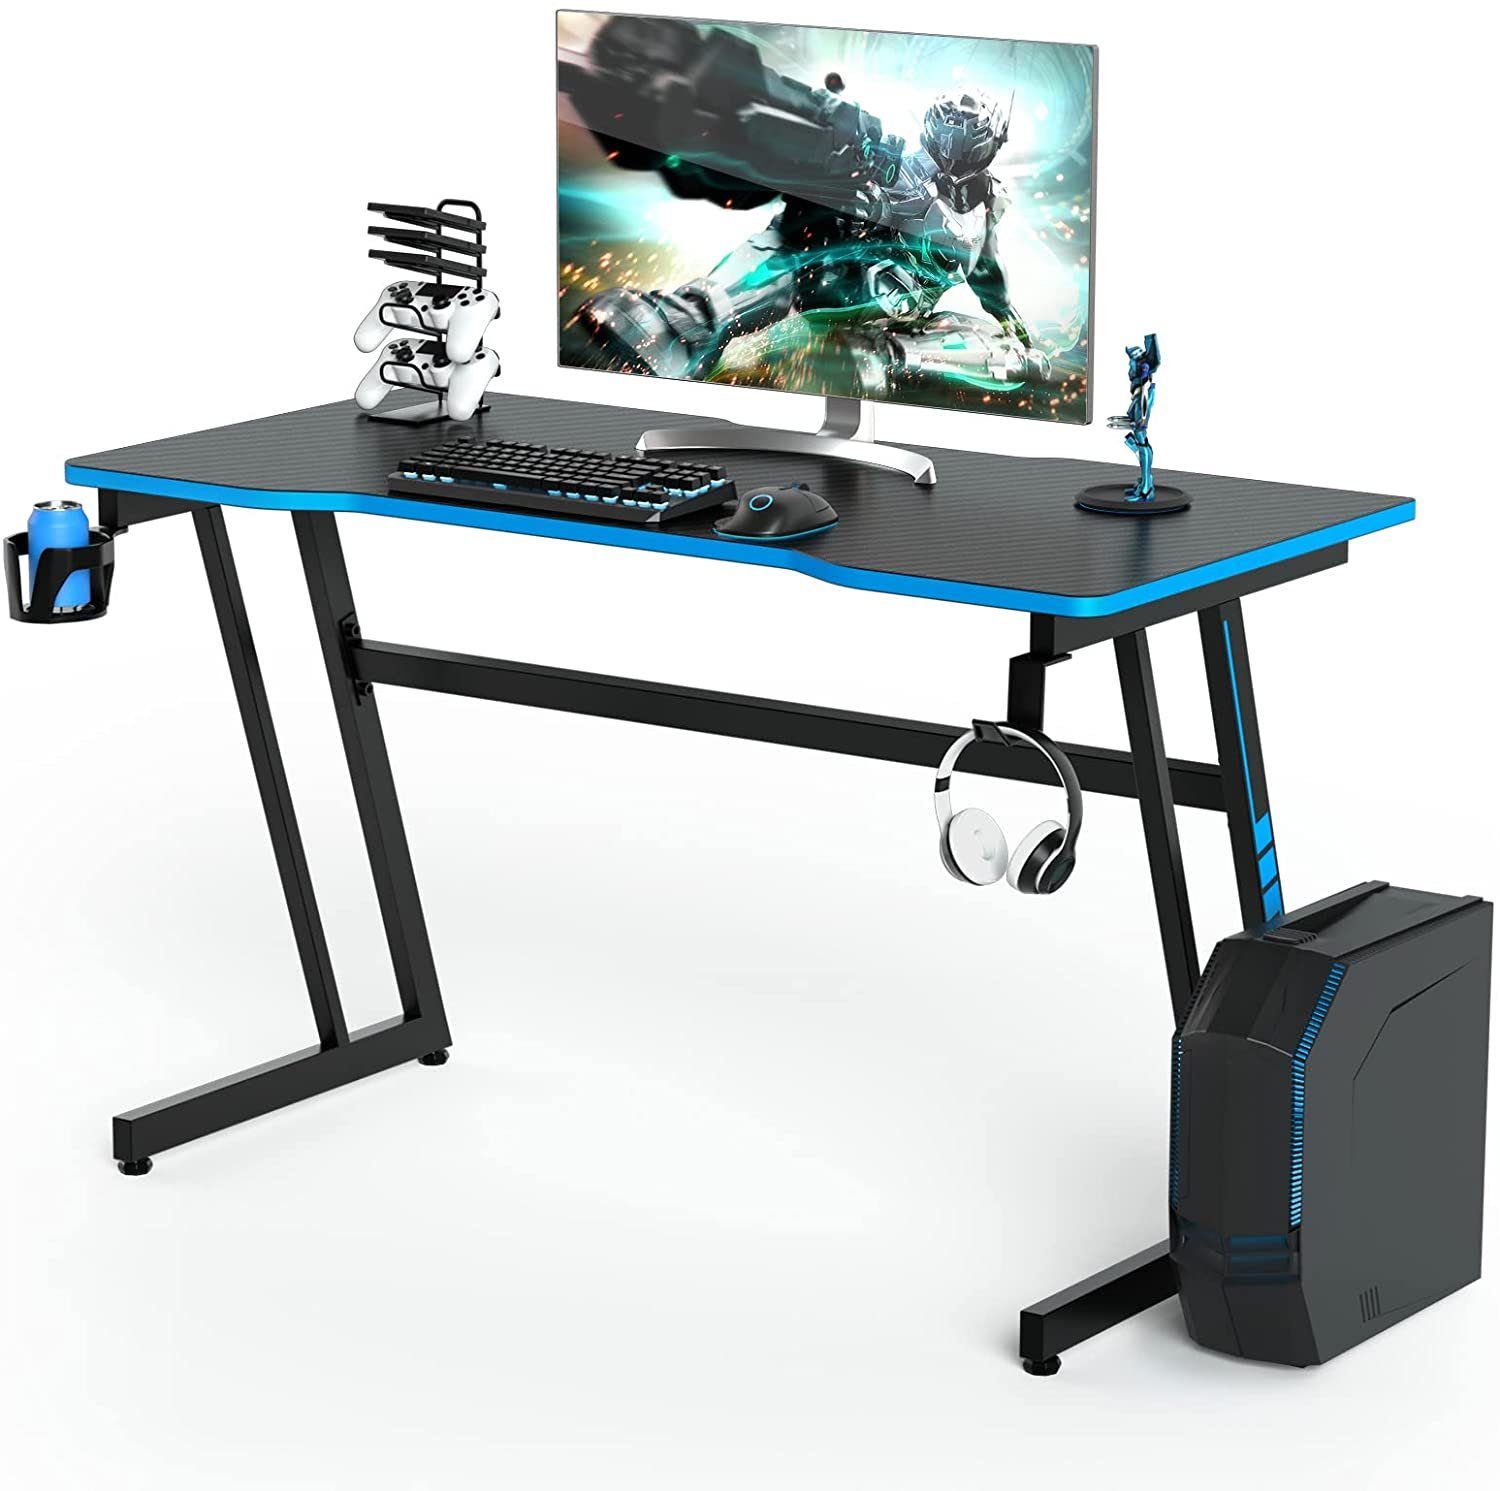 Z-förmig, Blau Getränkehalter, mit COSTWAY 120cm, Gamepad-Halterung Gamingtisch